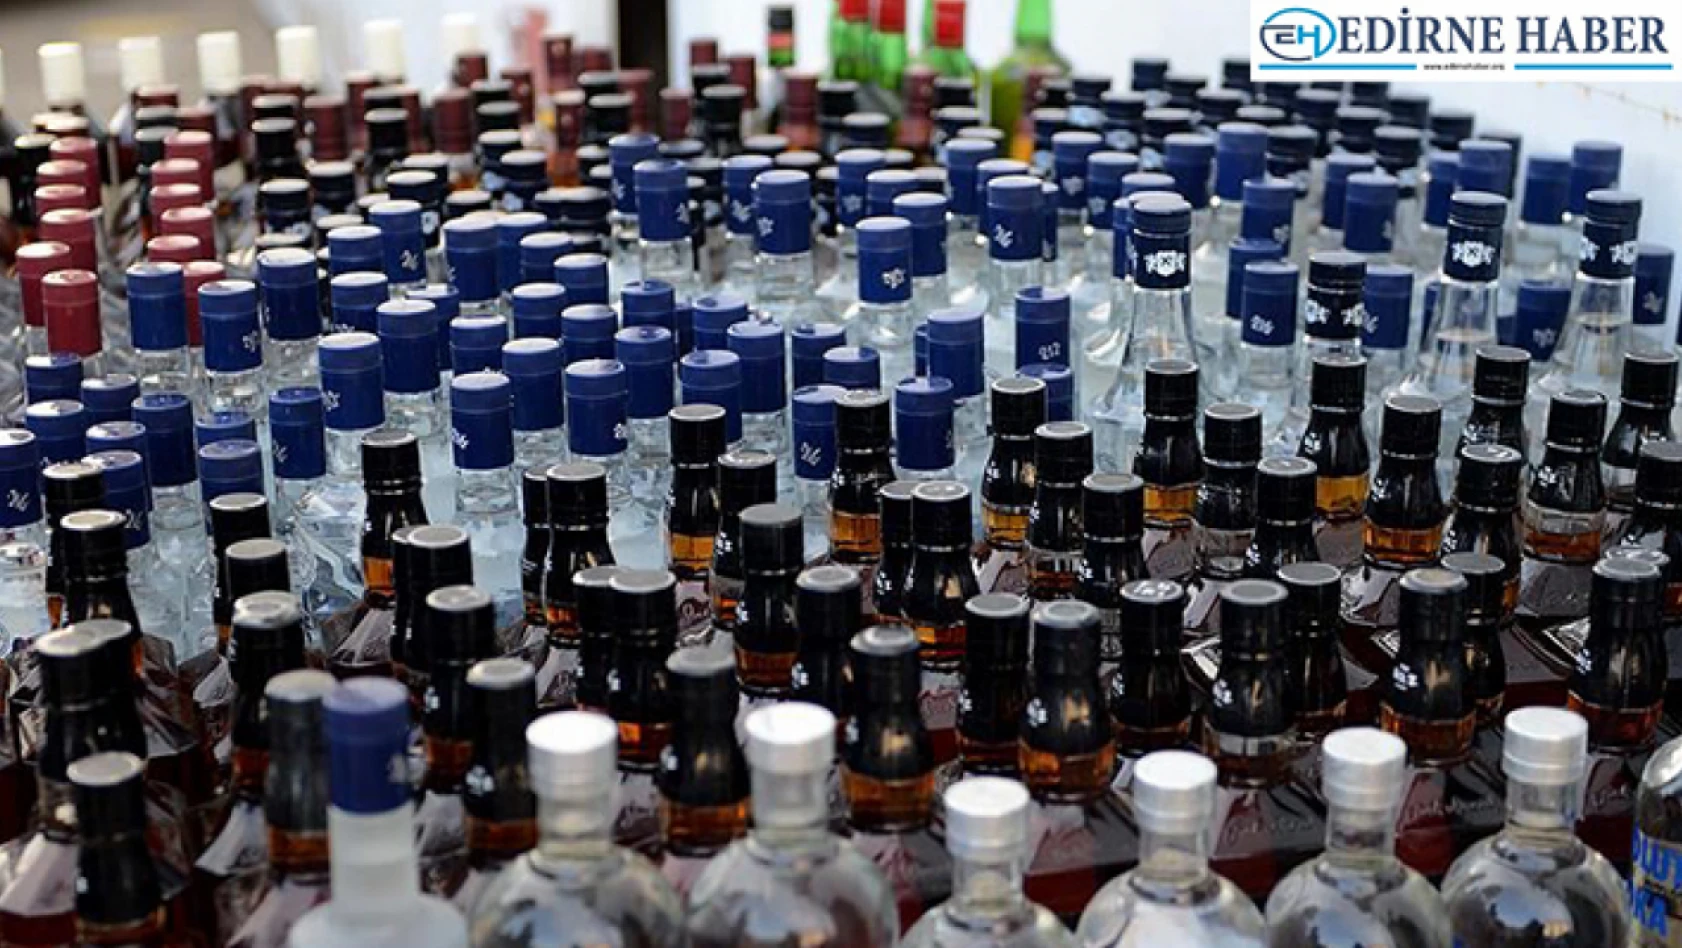 Edirne'de 118 şişe kaçak içki ele geçirildi